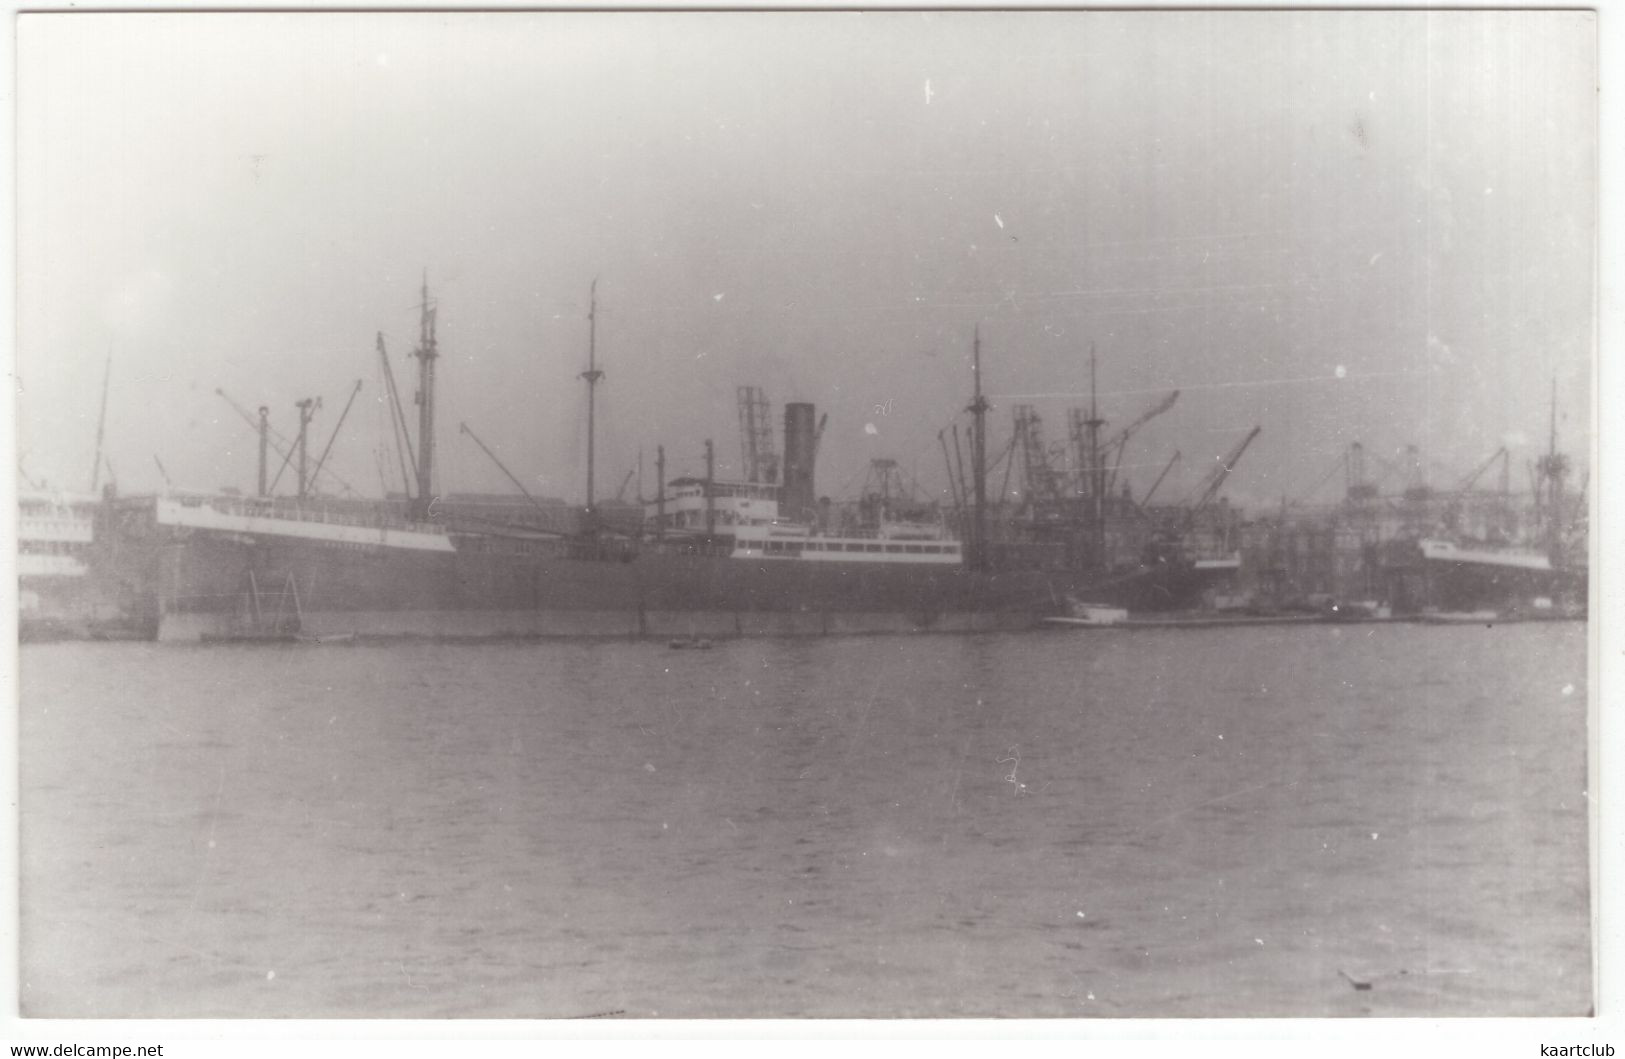 'OOSTKERK' - 1915, Kiel  - Cargo Vessel, Steamer - Boats